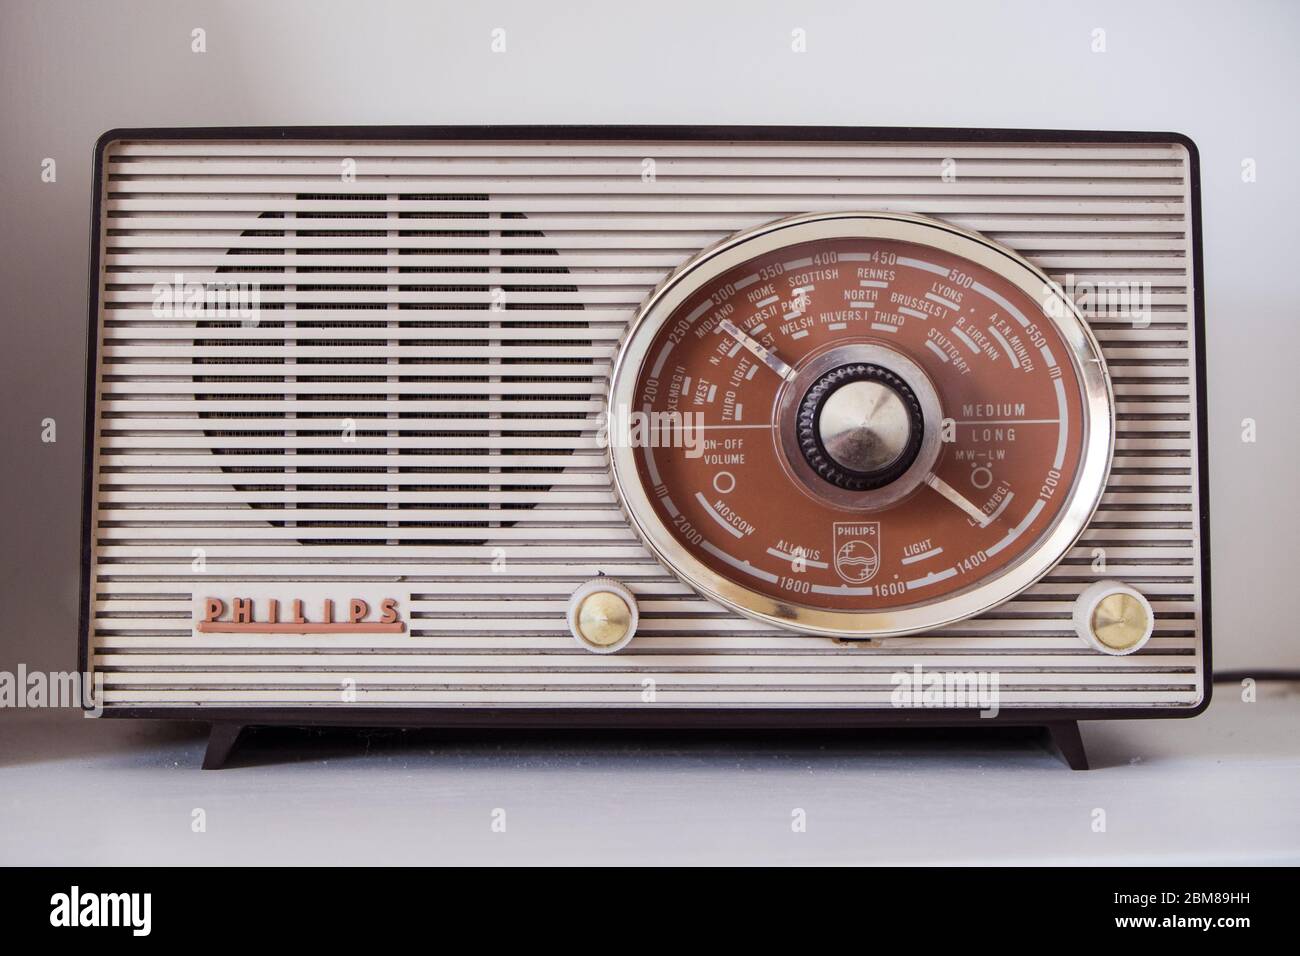 Phillips Vintage Radio Stock Photo - Alamy